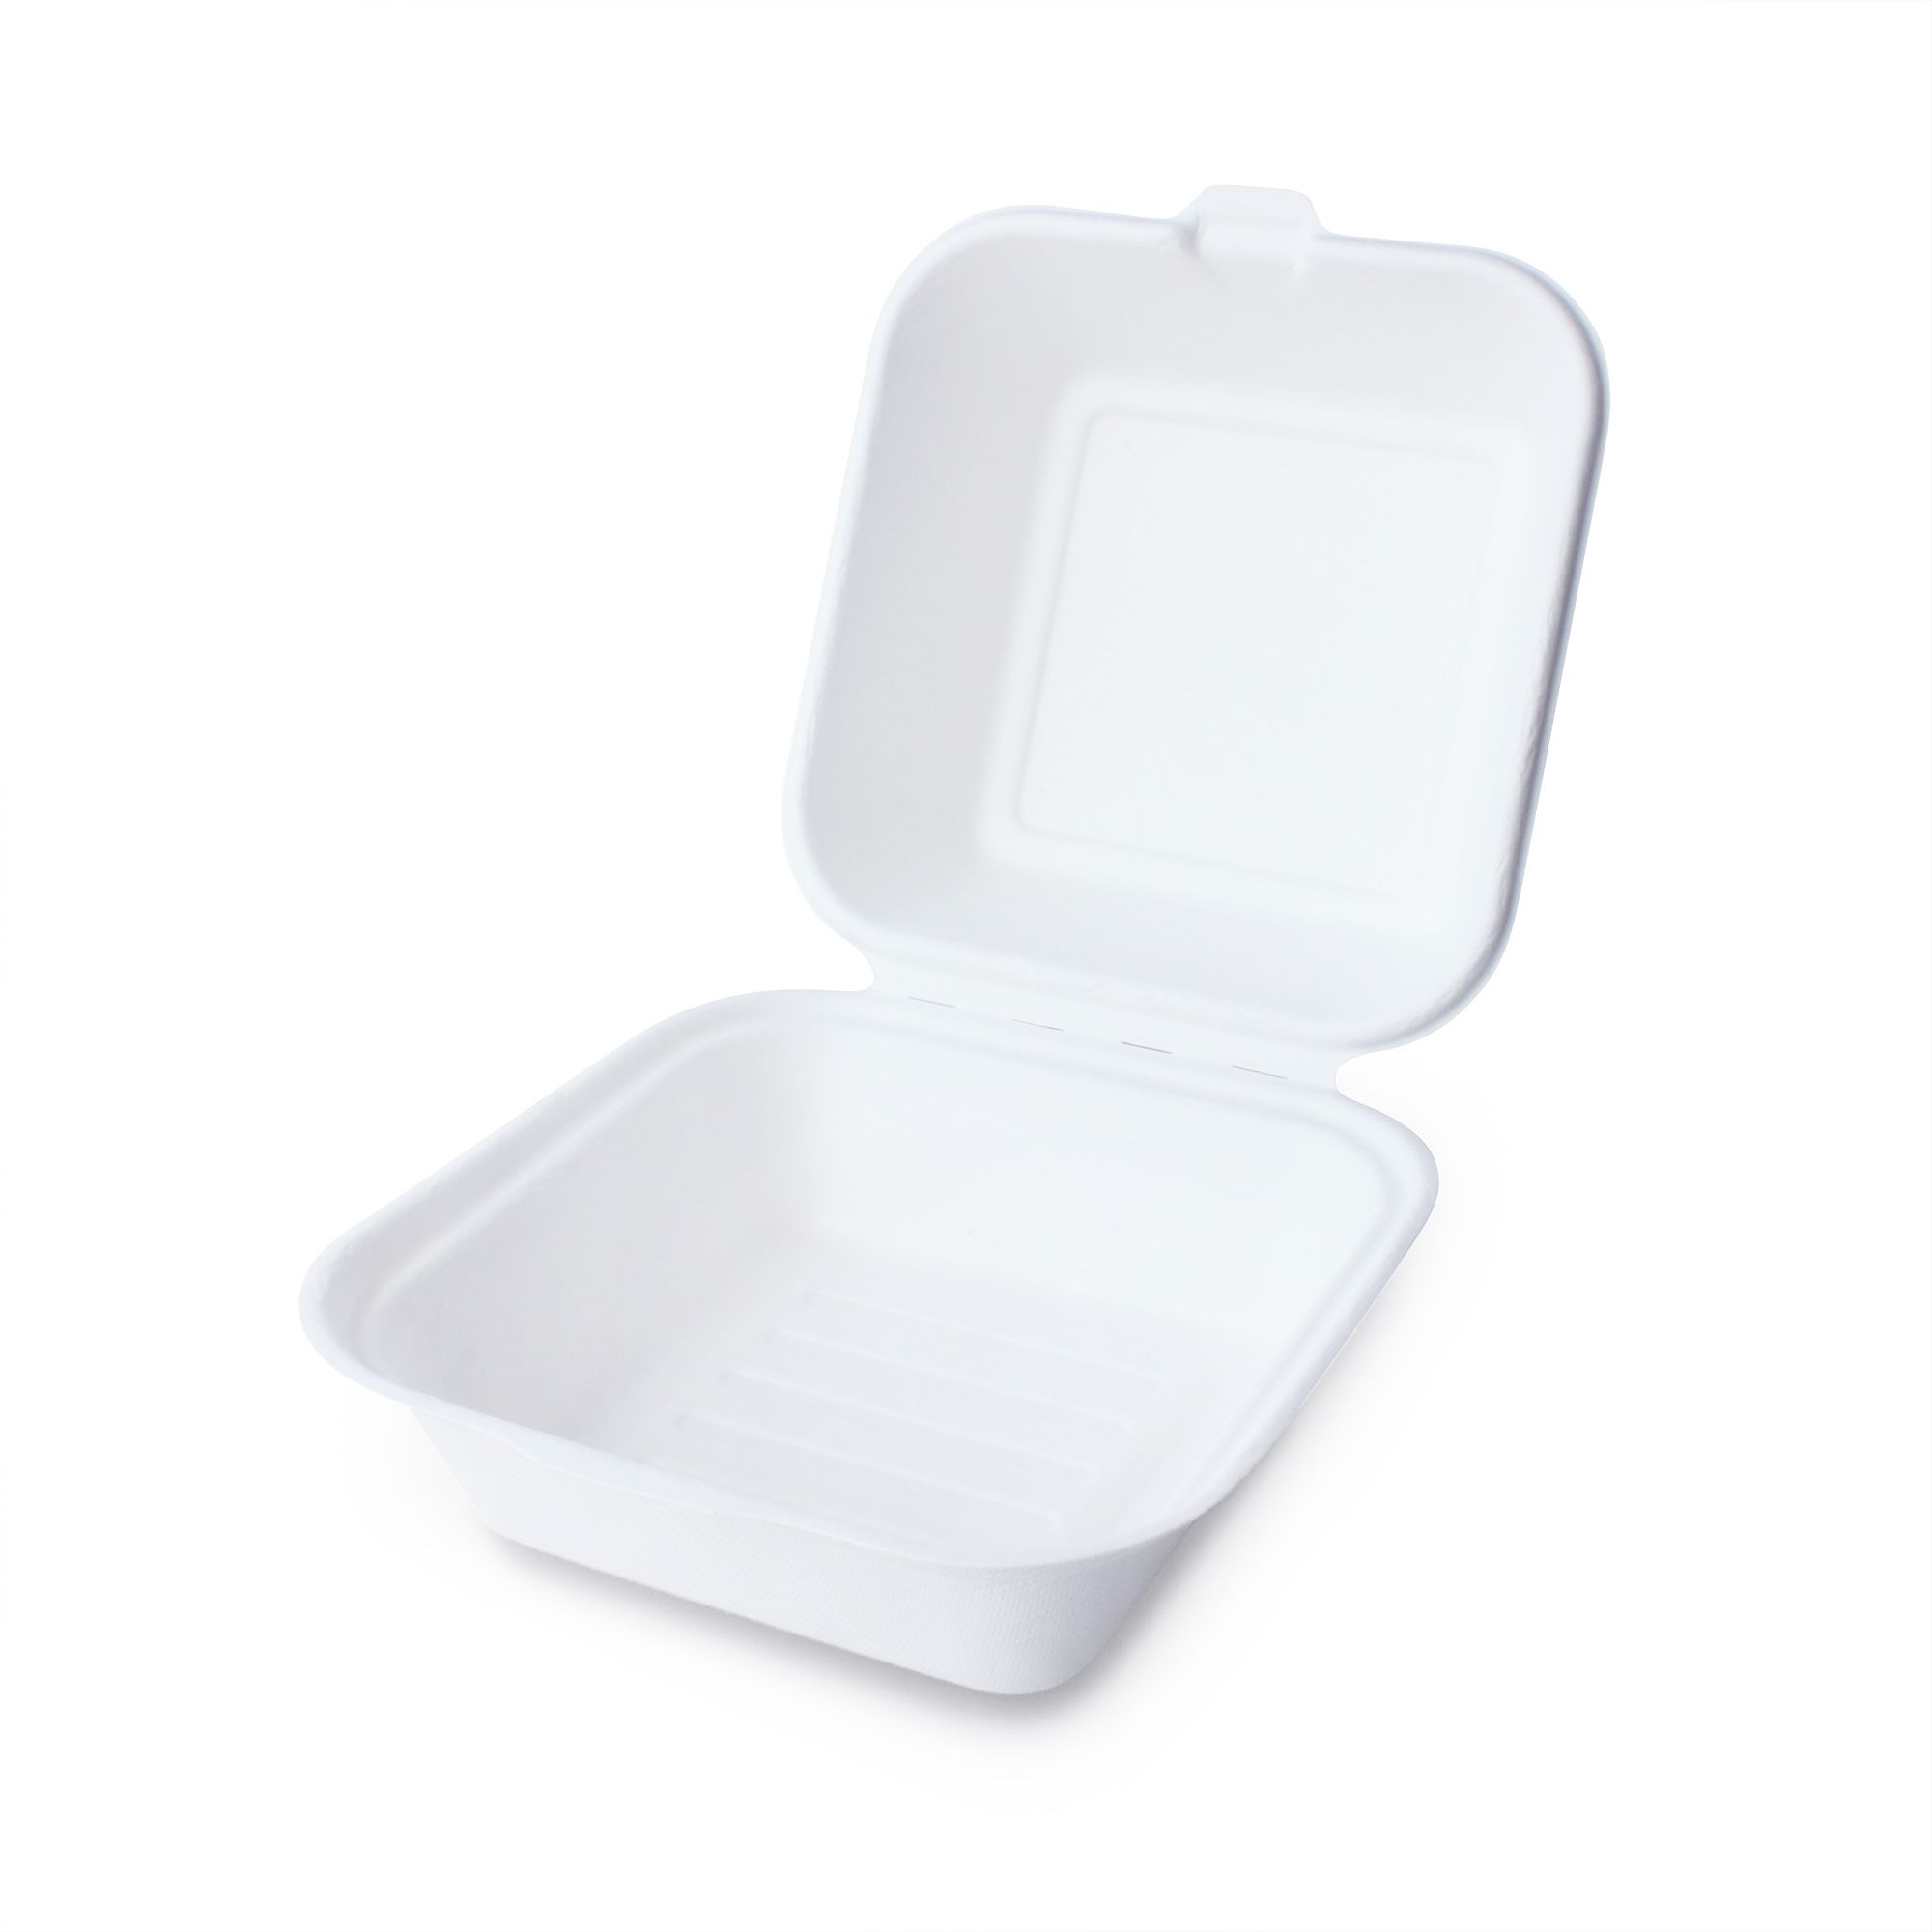 백색 뚜껑이 있는 대나무 햄버거 상자/케이크 상자